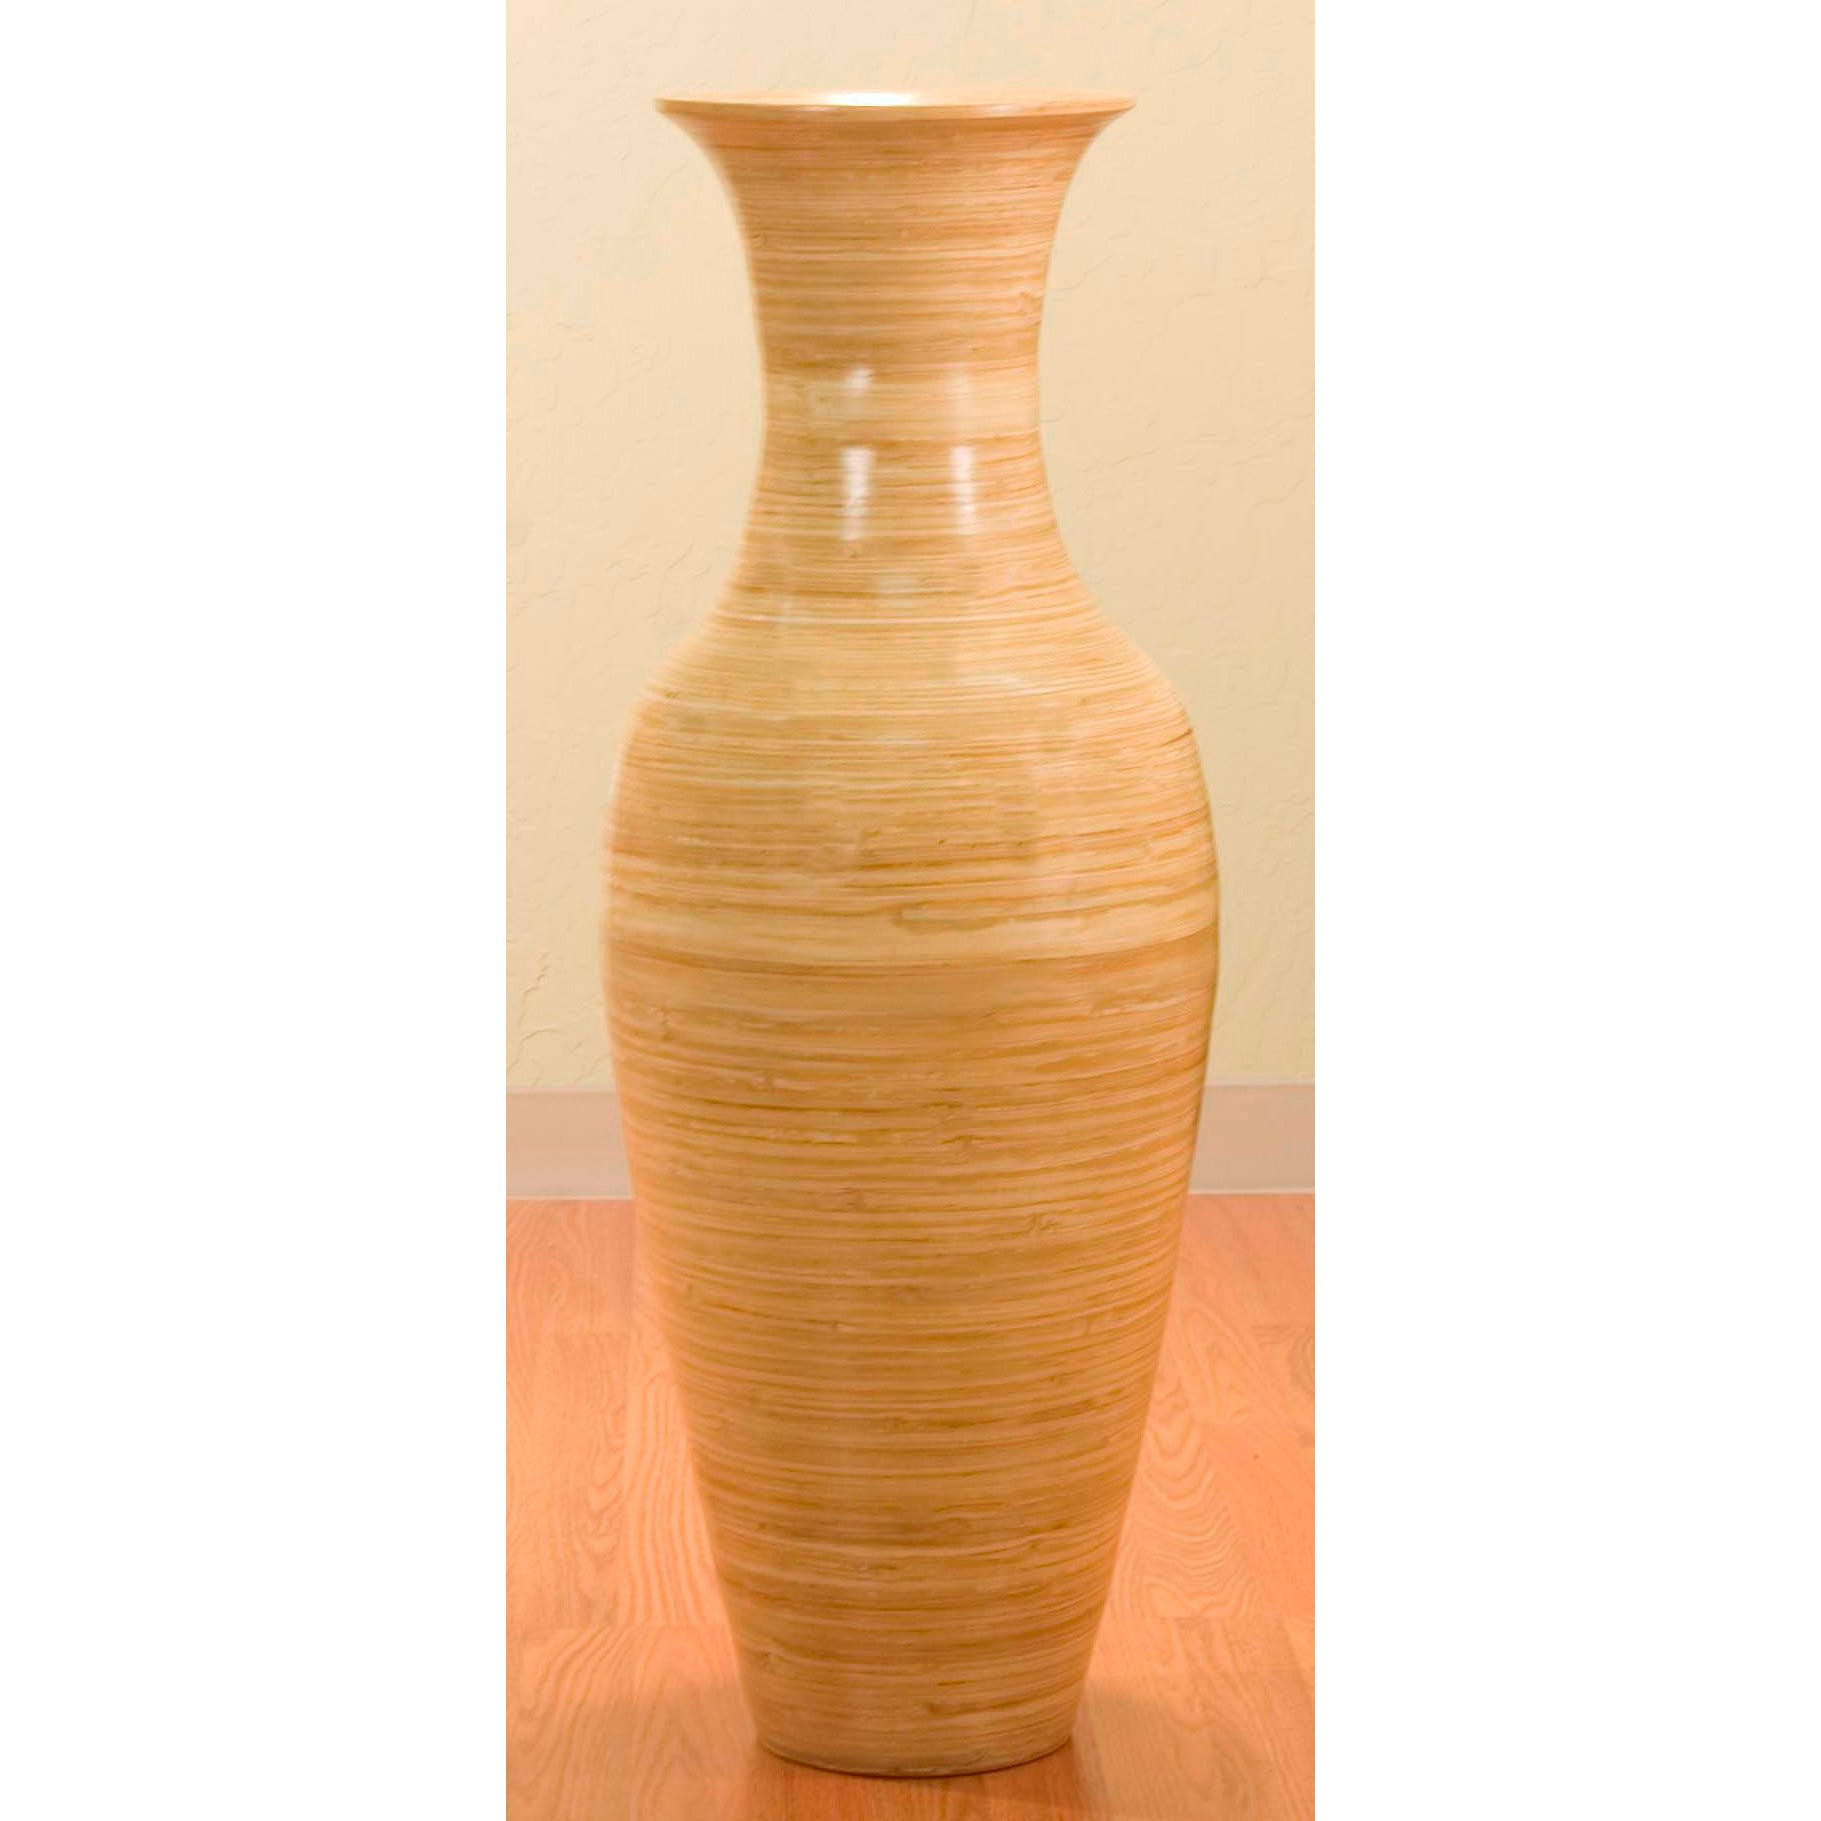 26 Wonderful Spun Bamboo Vase 2022 free download spun bamboo vase of shop 36 inch bamboo tall floor vase free shipping today pertaining to shop 36 inch bamboo tall floor vase free shipping today overstock com 2580805